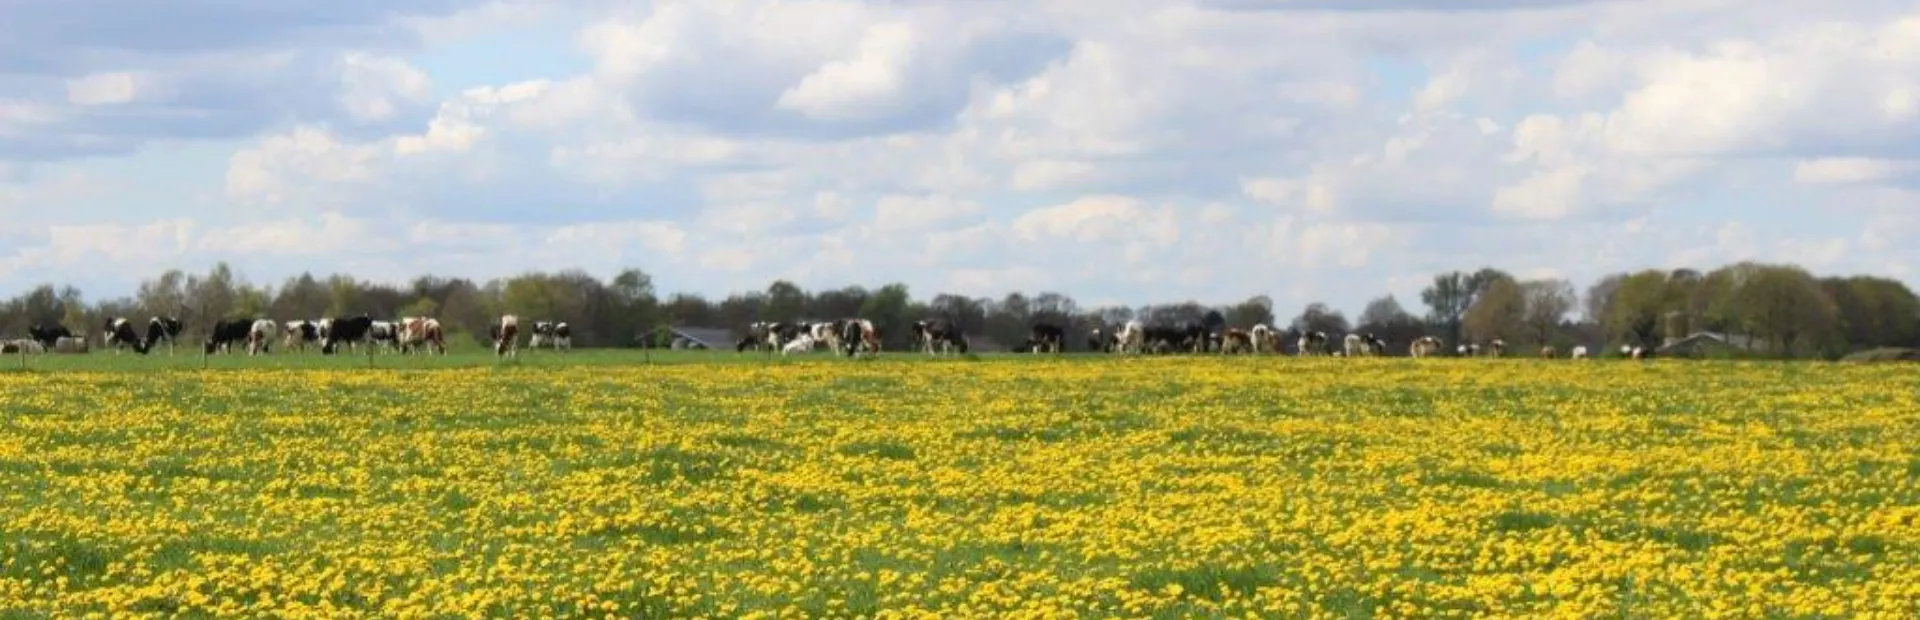 Paardebloemen veld met koeien